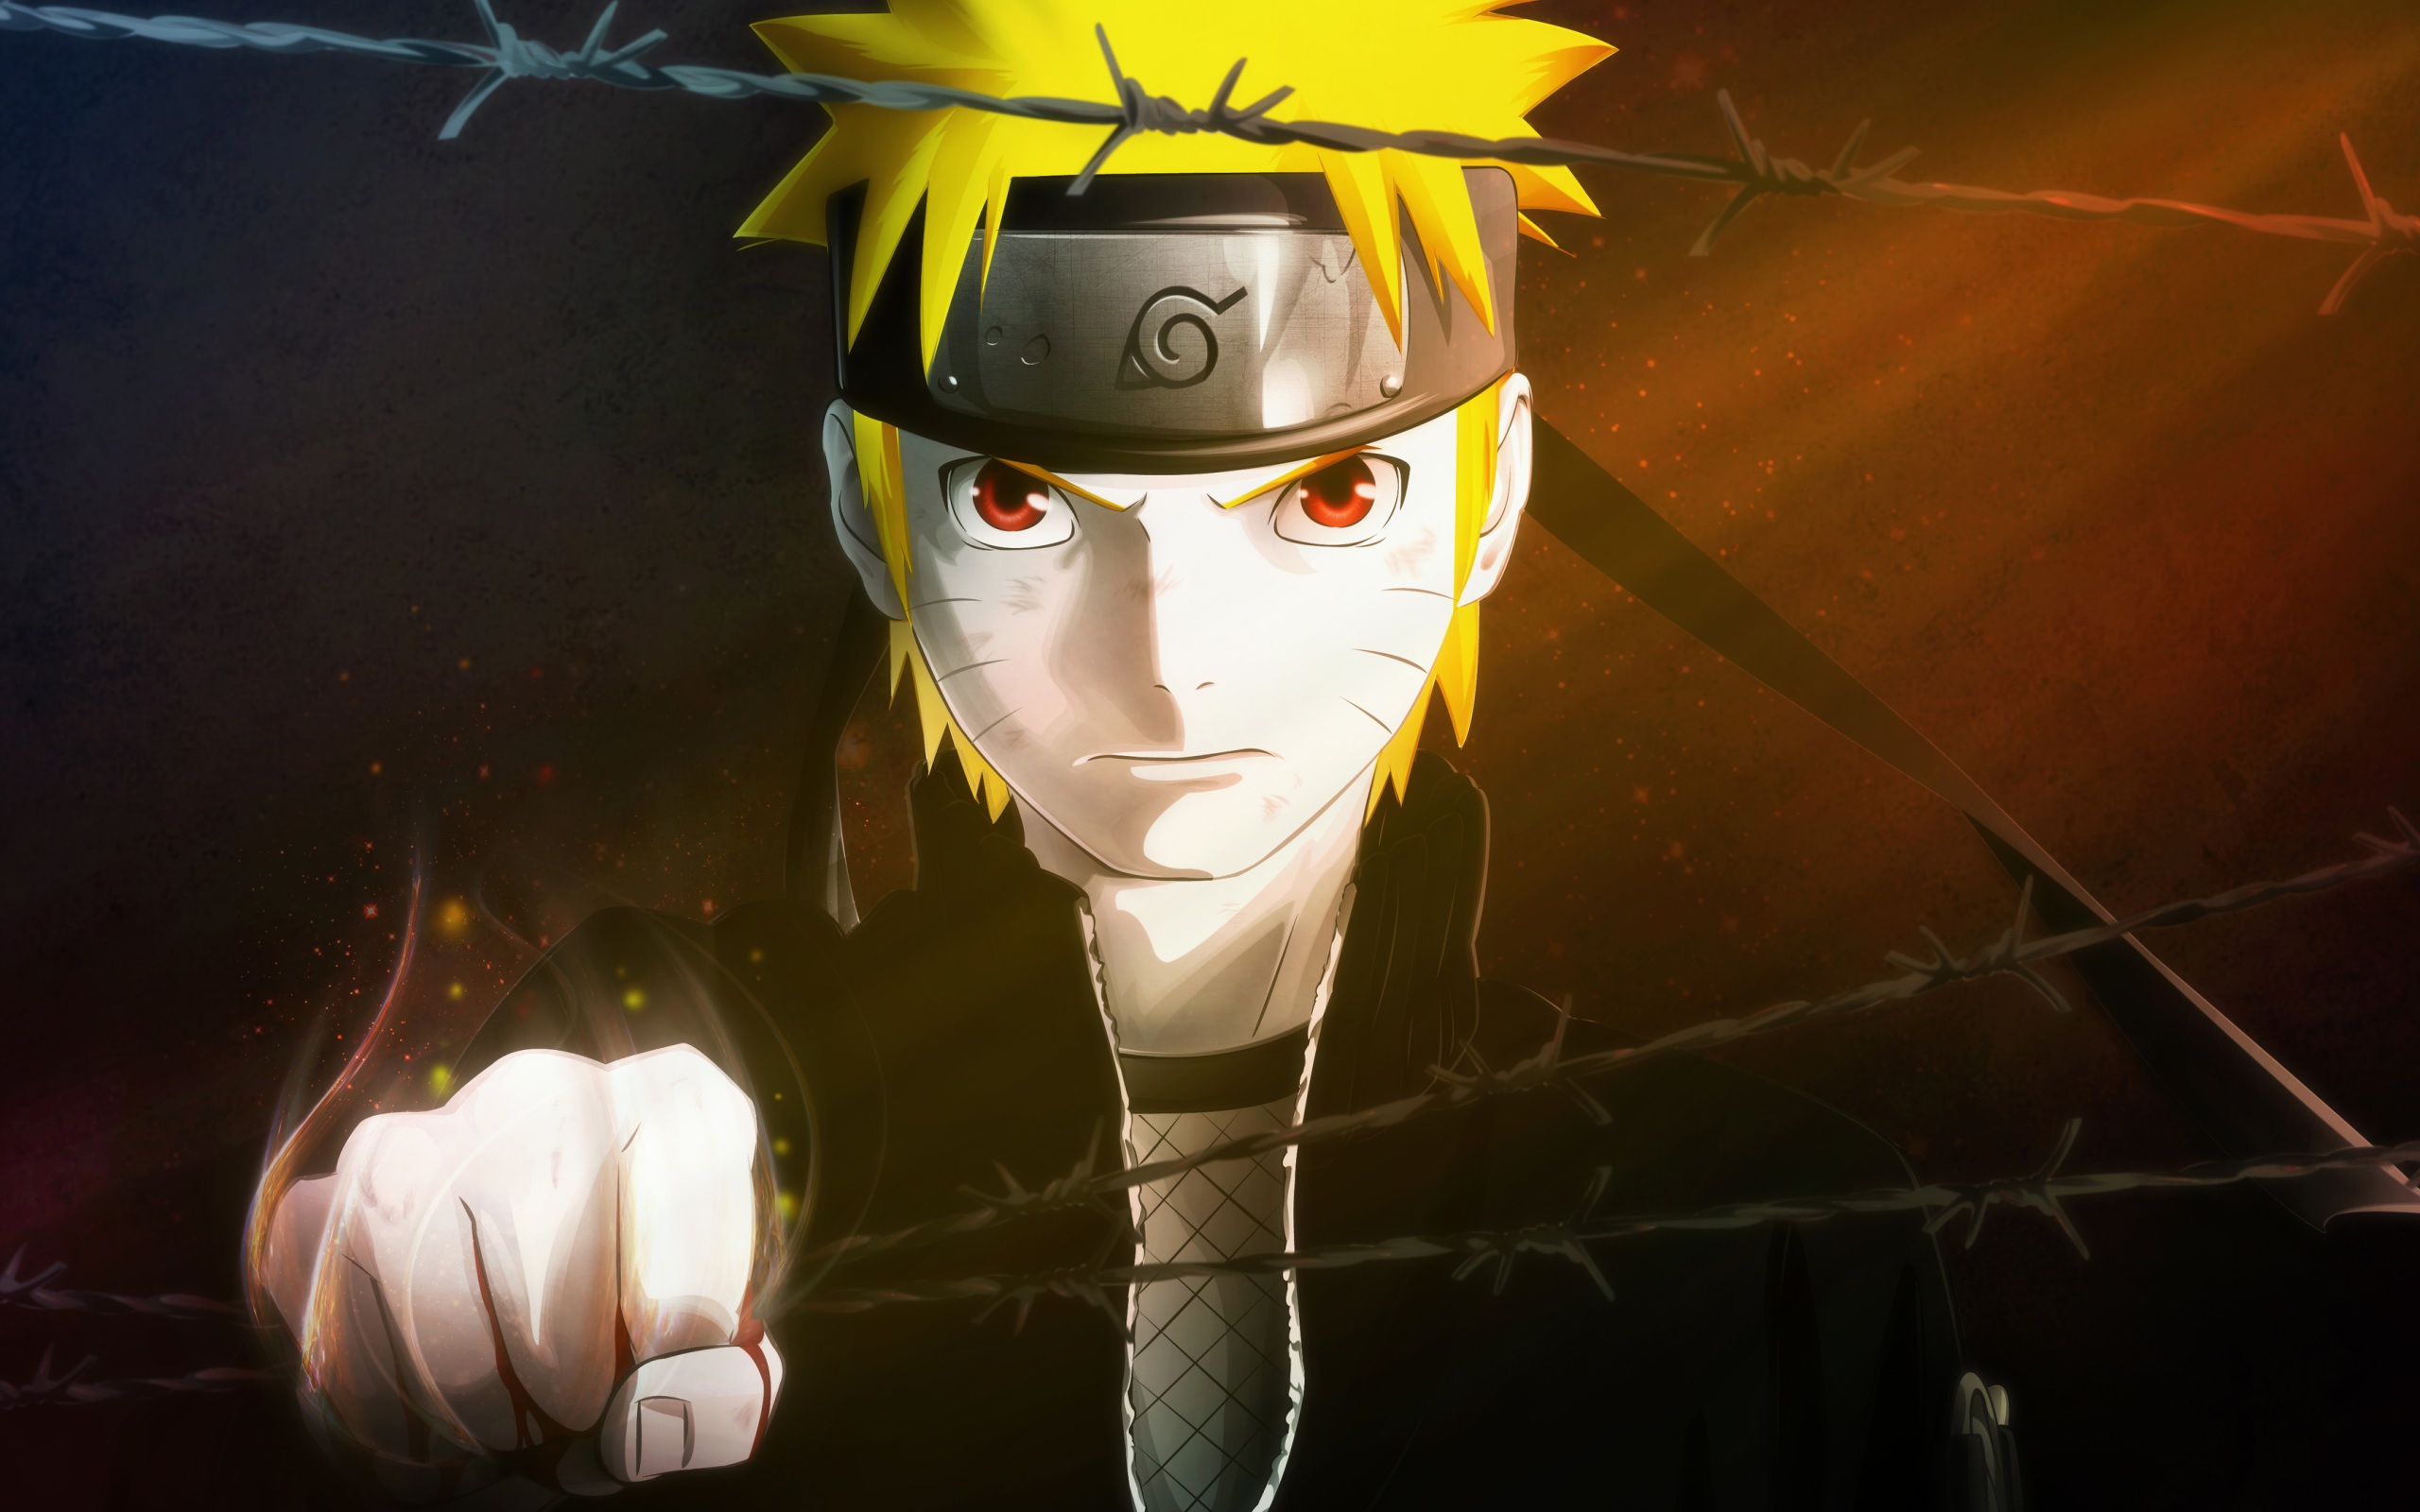 Hình nền Naruto anime 4k đẹp: Naruto không chỉ là một bộ anime hay mà còn là một phong cách sống đầy cảm hứng, đầy đam mê. Và giờ đây, bạn sẽ được trải nghiệm cảm giác tuyệt vời khi sử dụng hình nền anime Naruto 4k đẹp mắt trên màn hình thiết bị của bạn. Từ những trận chiến ép đến những cảnh đẹp thiên nhiên, hình ảnh này sẽ làm thỏa mãn niềm đam mê của bạn.